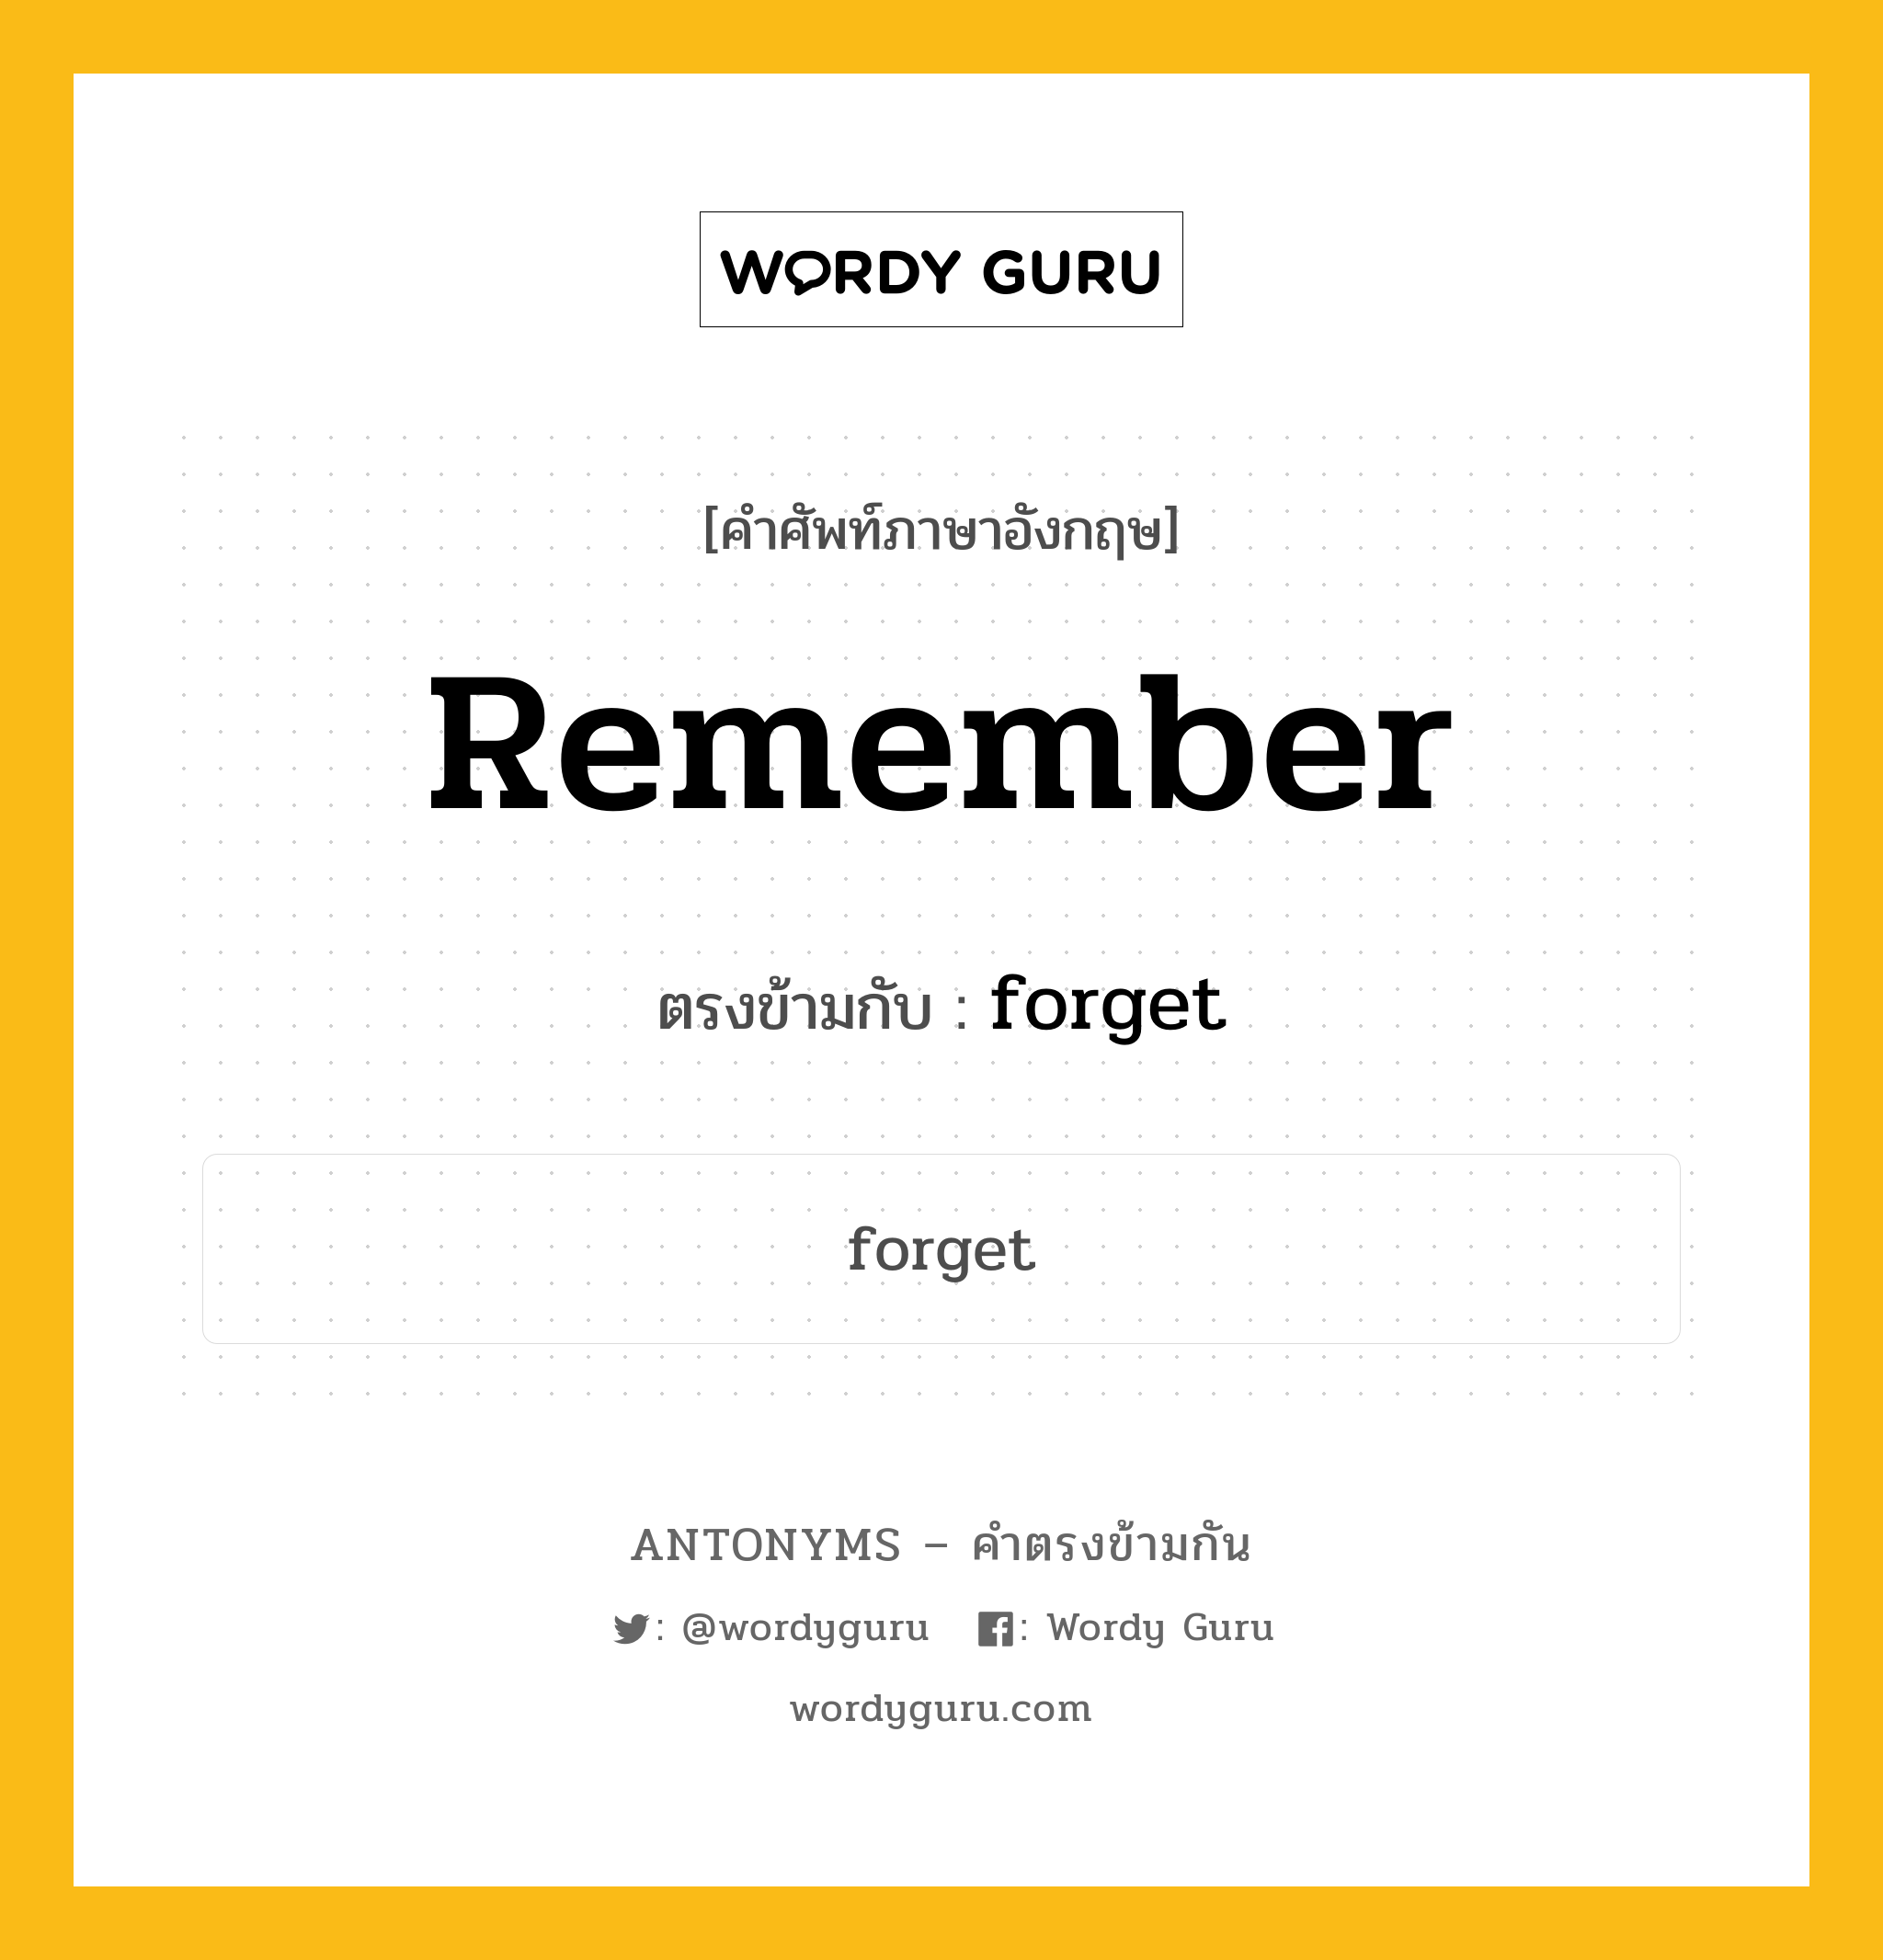 remember เป็นคำตรงข้ามกับคำไหนบ้าง?, คำศัพท์ภาษาอังกฤษ remember ตรงข้ามกับ forget หมวด forget